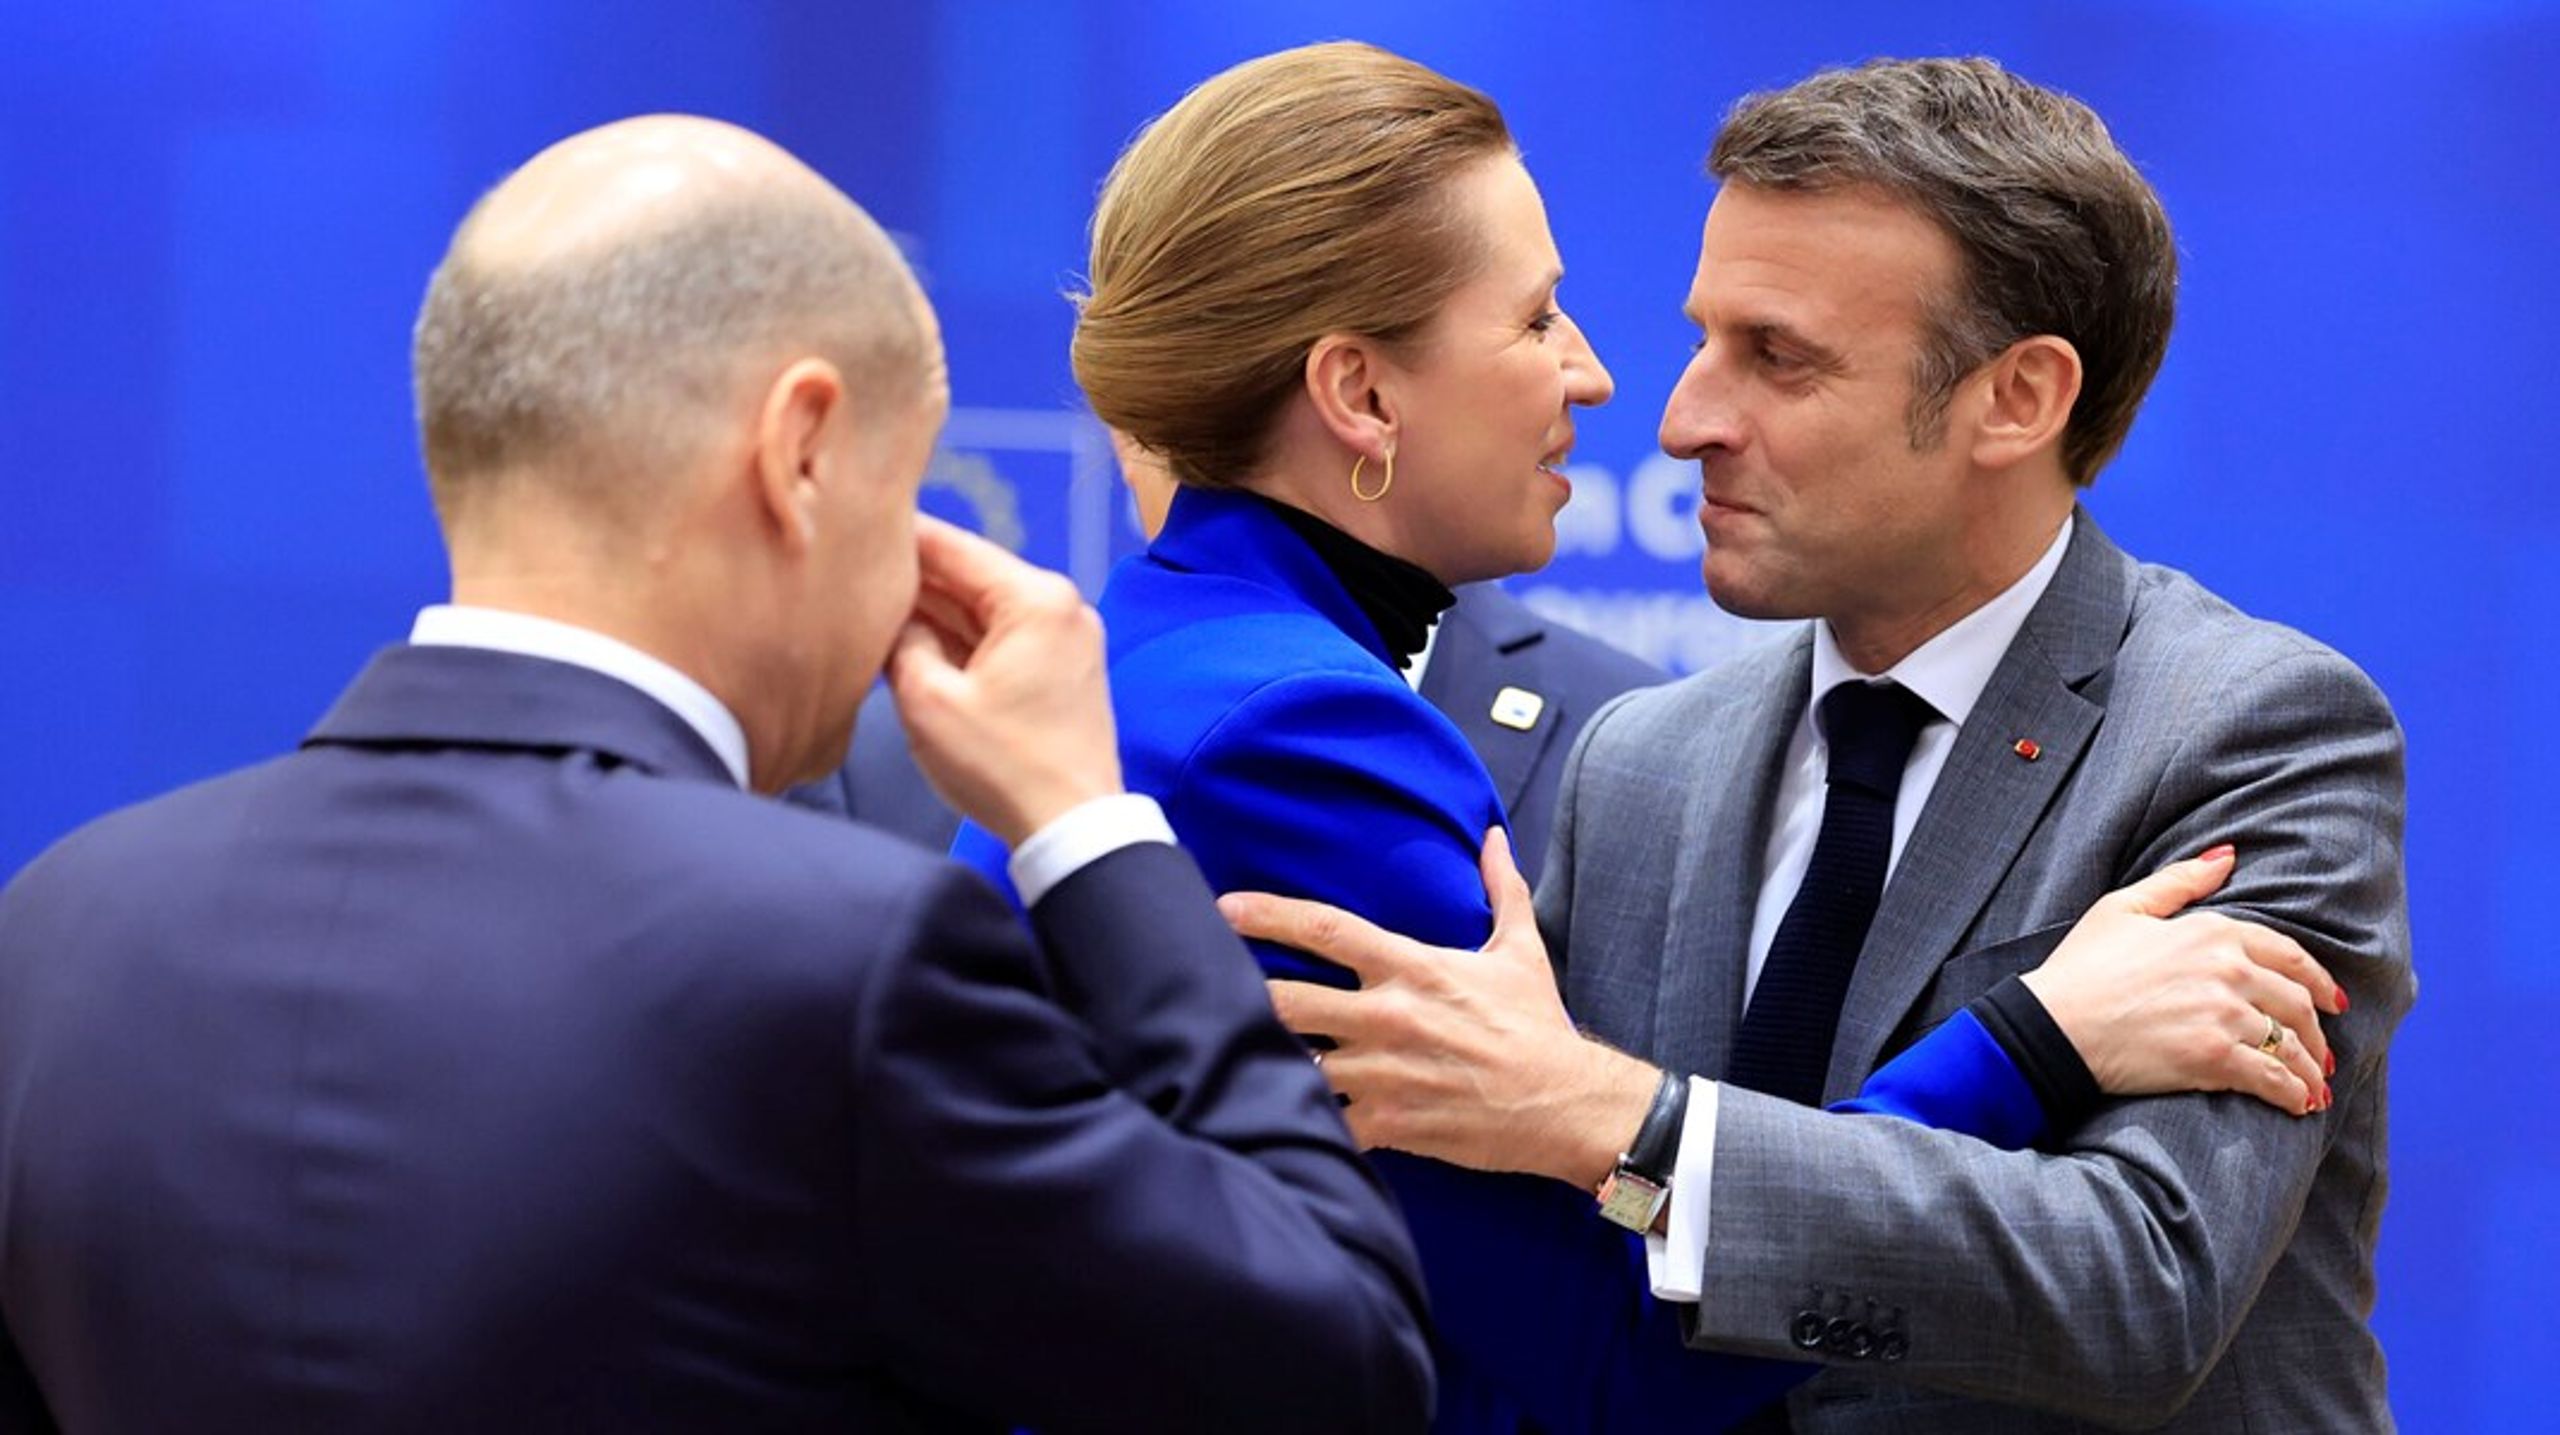 Statsminister Mette Frederiksen (S) hilste hjerteligt på både Tysklands kansler, Olaf Scholz, og Frankrigs præsident, Emmanuel Macron, under topmødet i Bruxelles.